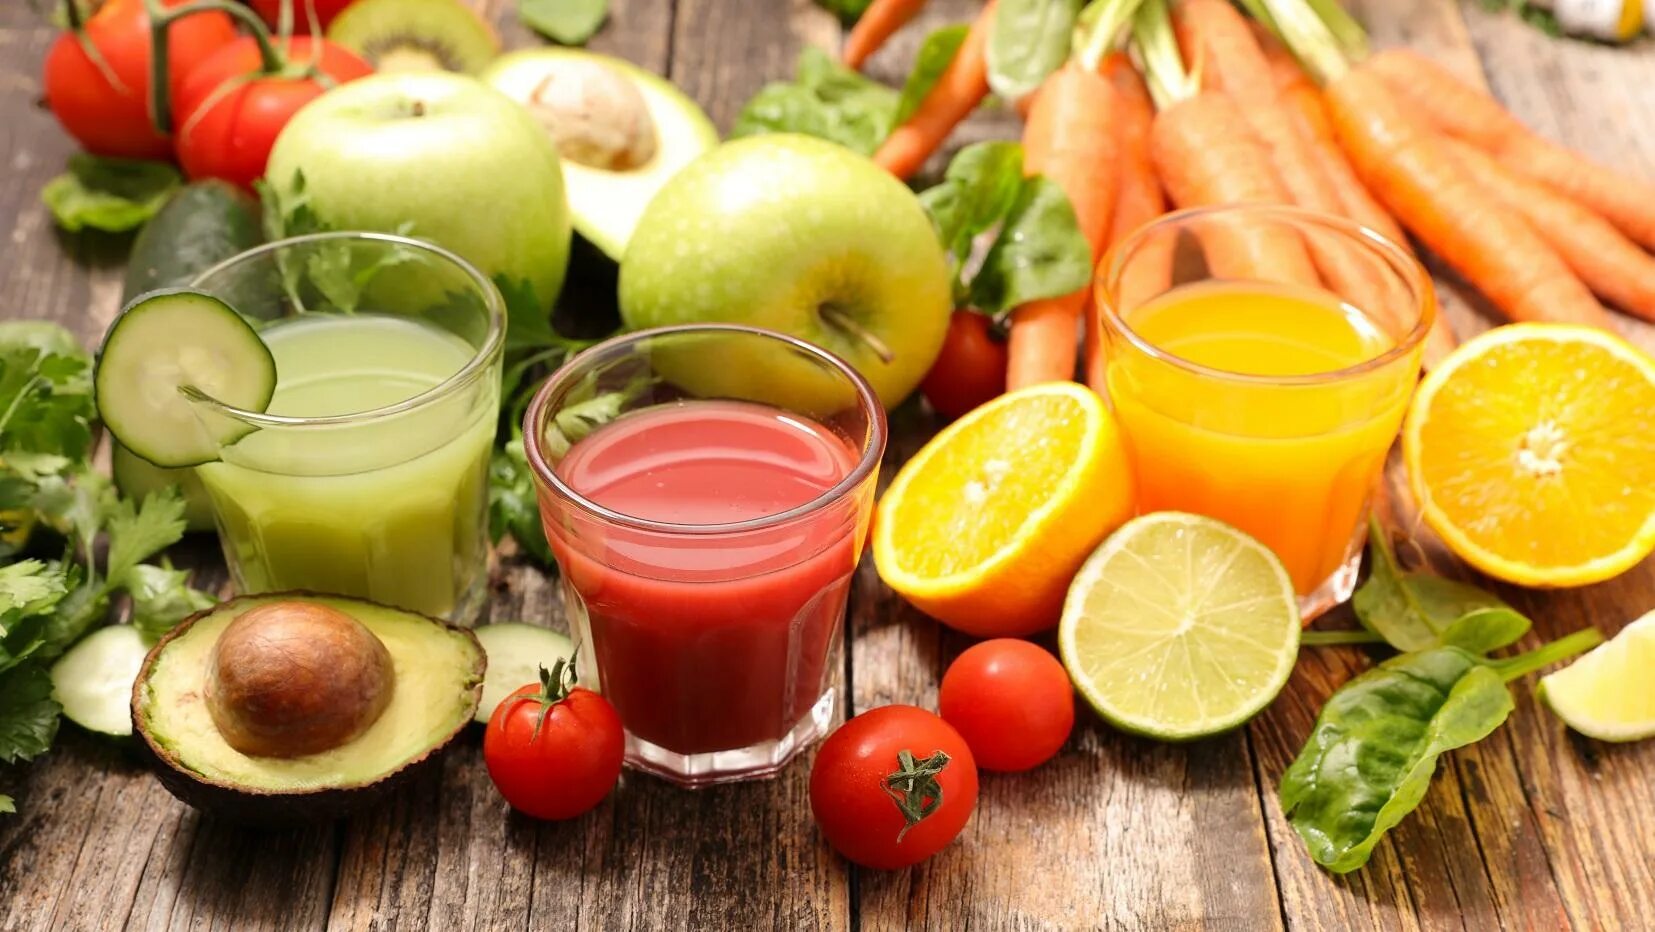 Vegetable juice. Соки из овощей и фруктов. Фруктовый сок. Свежевыжатый овощной сок. Плодово овощные соки.